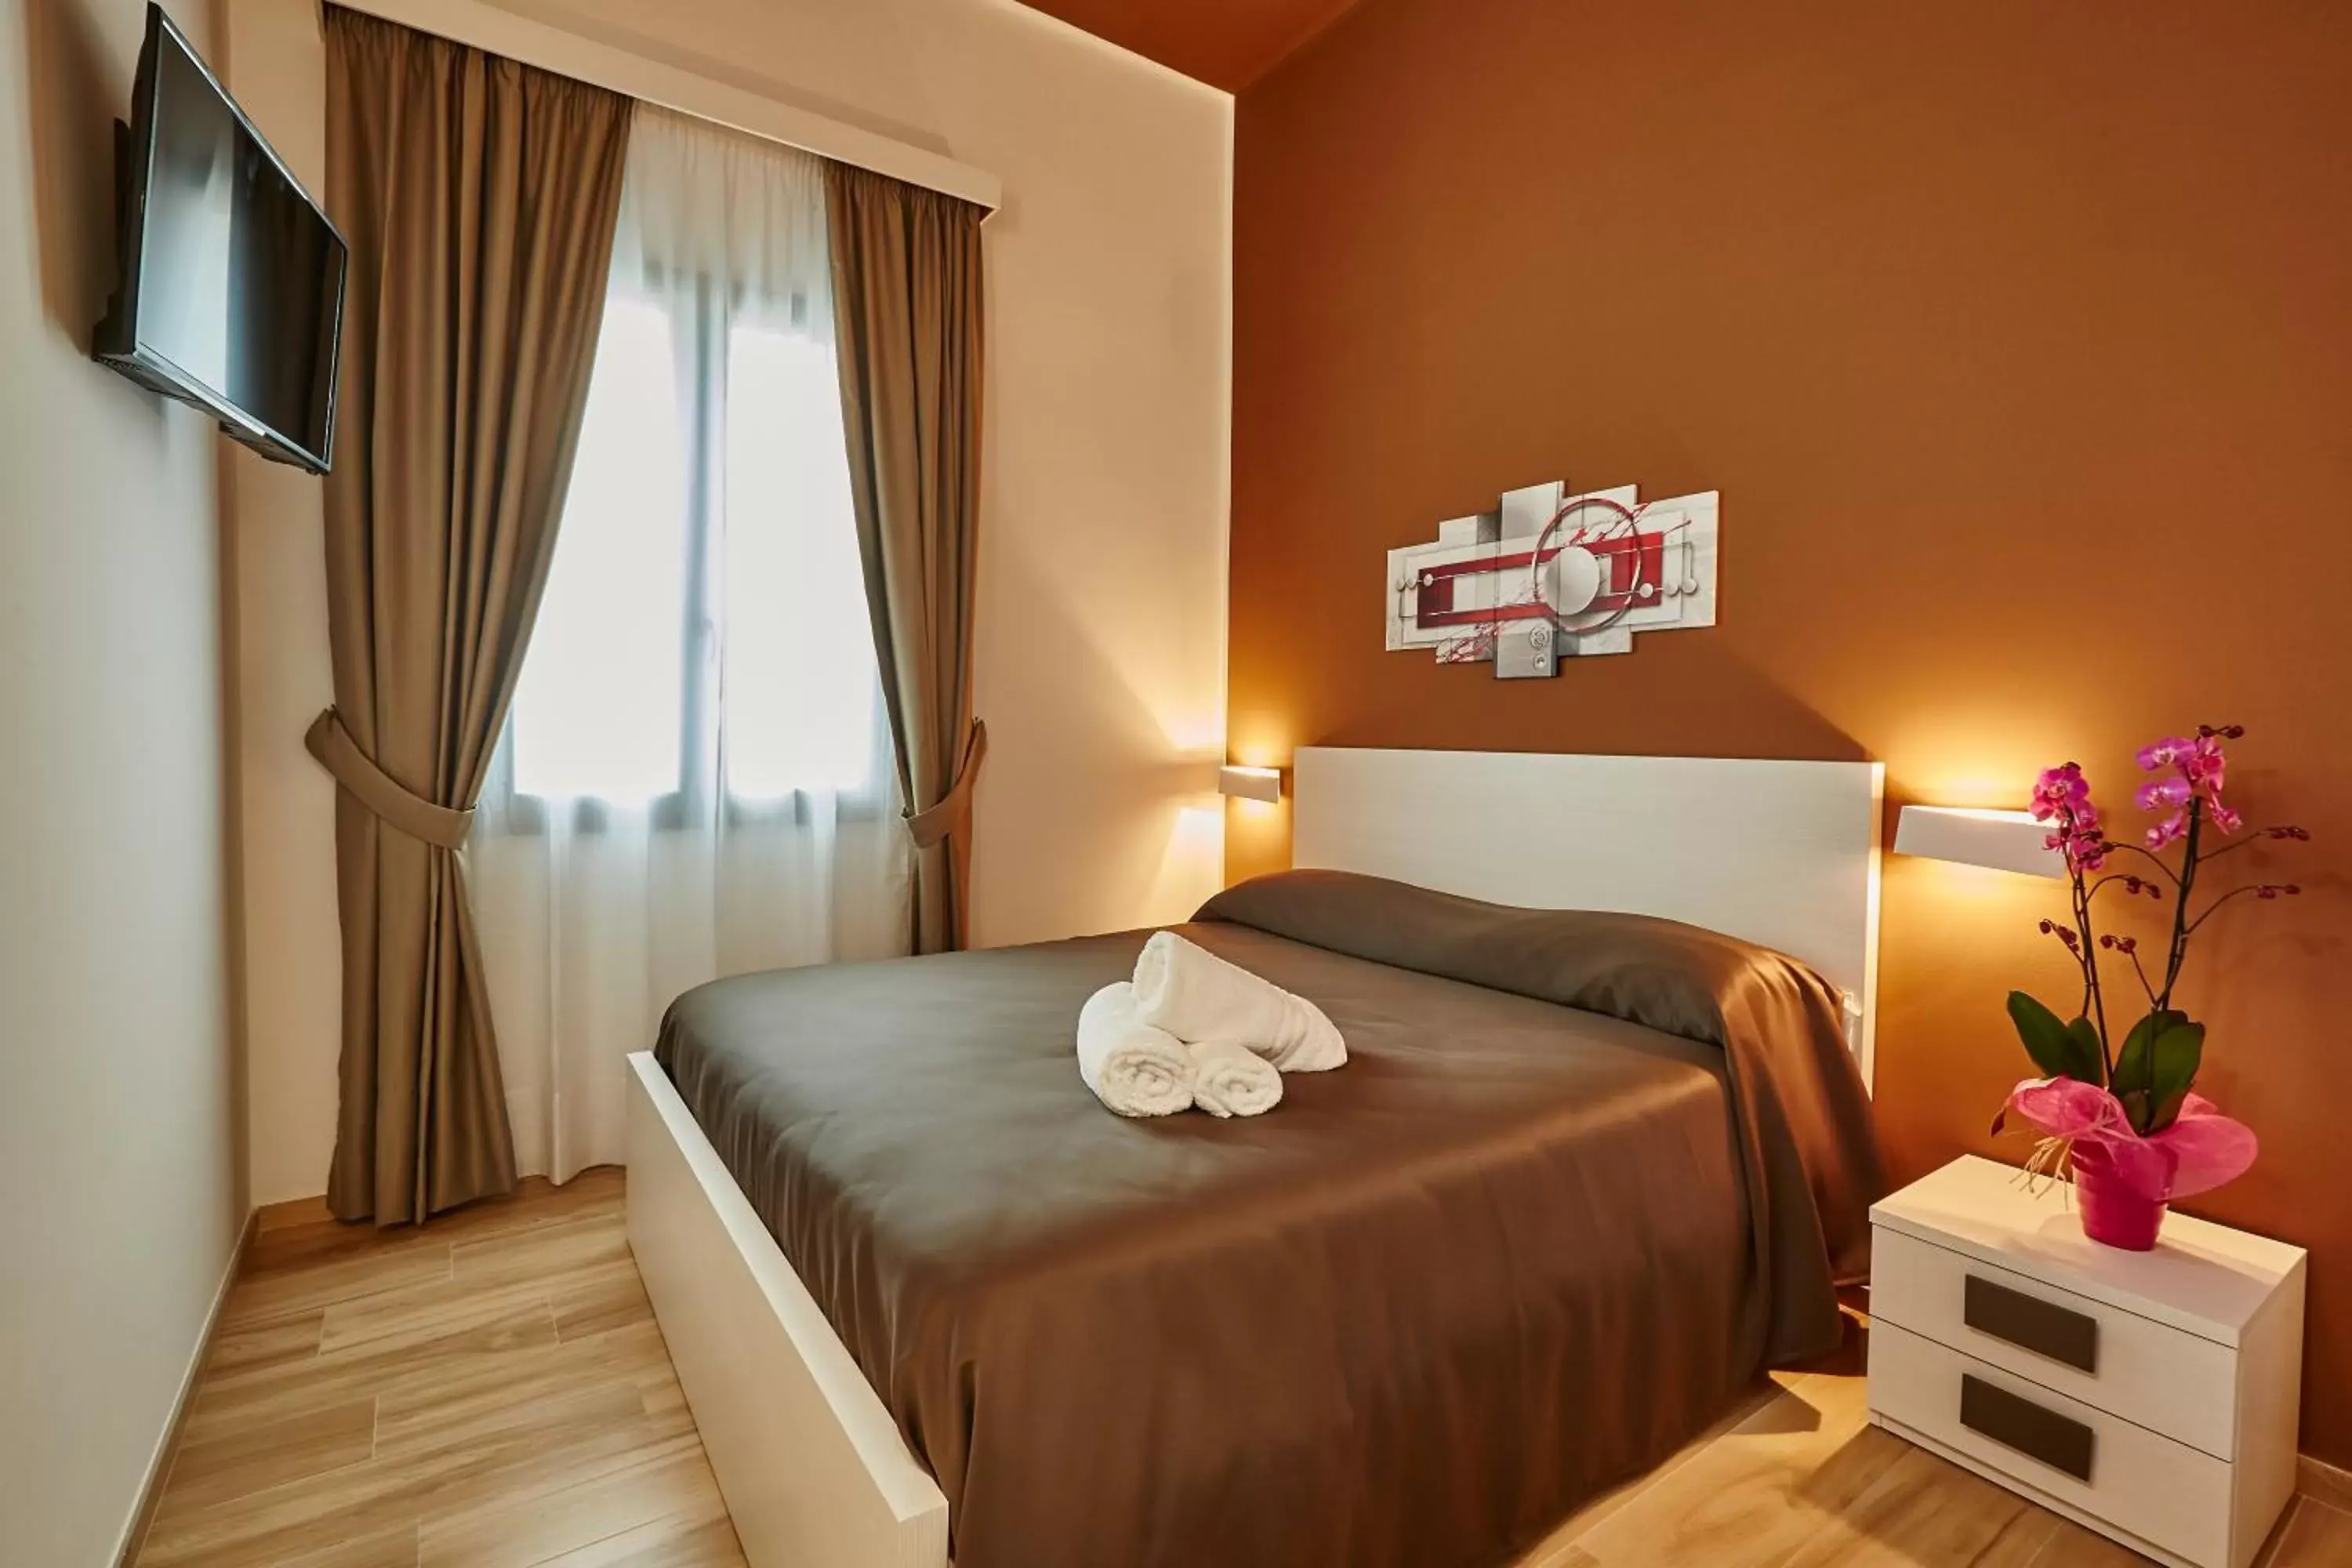 Bed, Room Photo in Il Vecchio Marsala